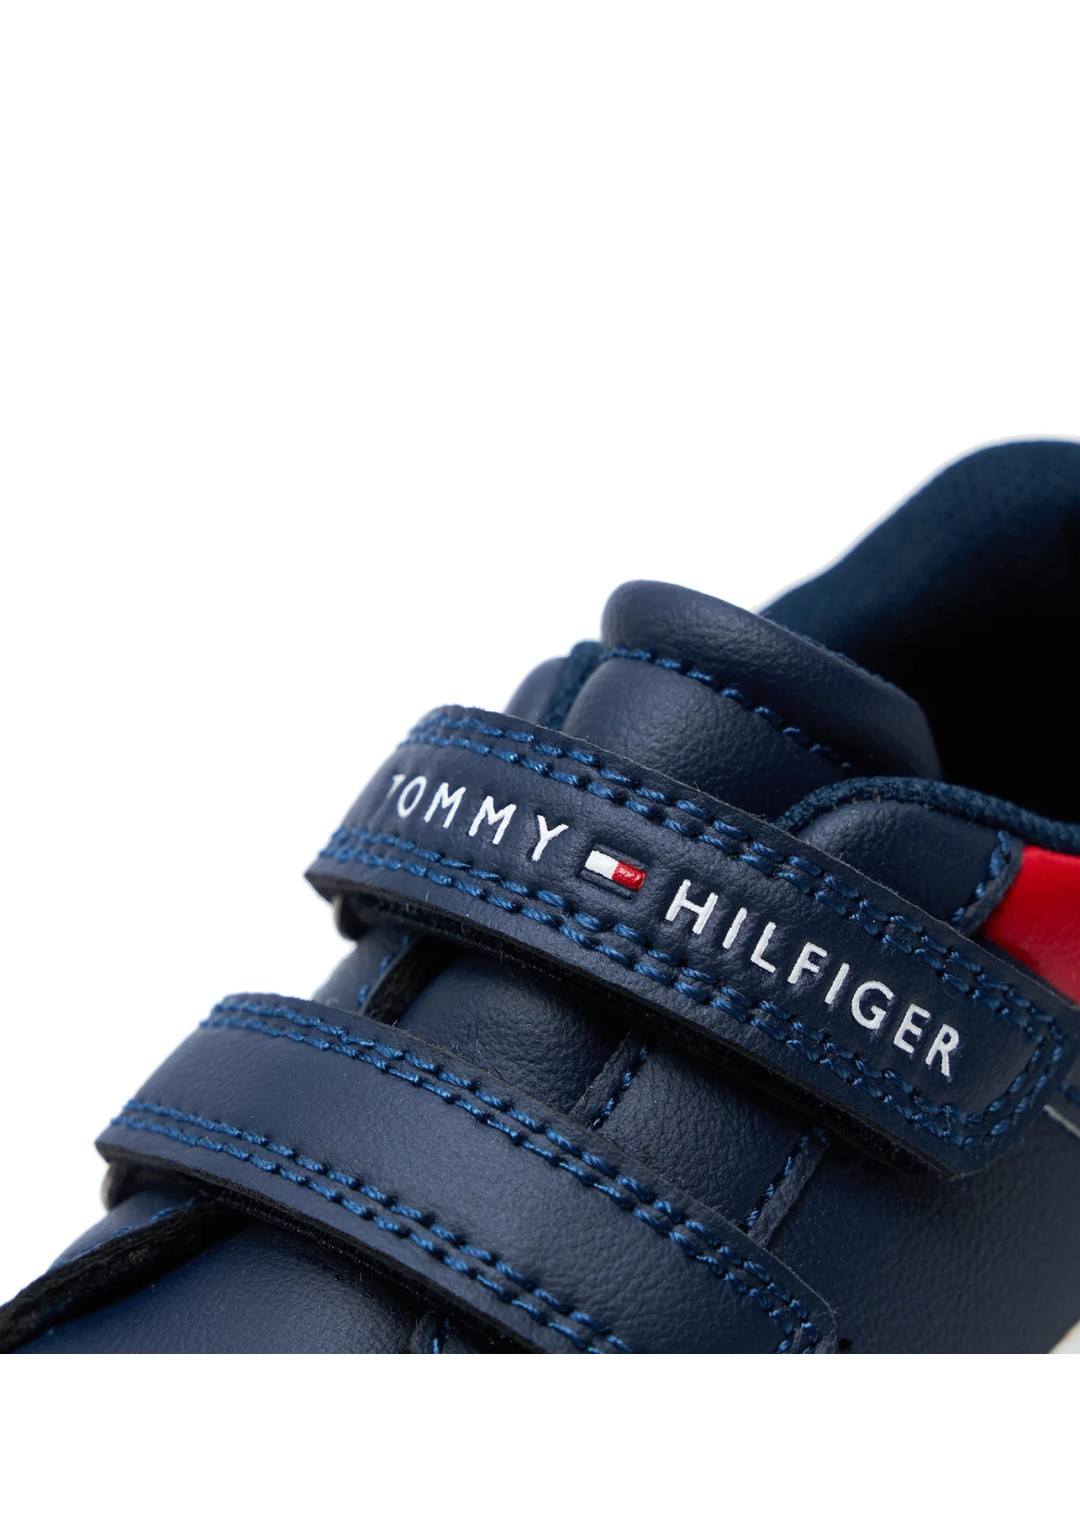 TOMMY HILFIGER - Sneakers Strappi - Bambini e ragazzi - T1B9-33327